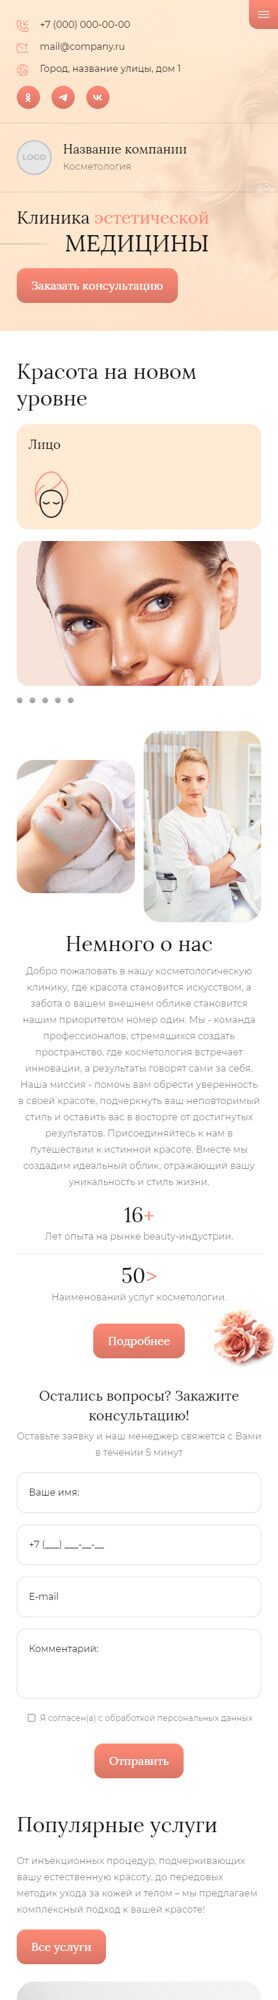 Готовый Сайт-Бизнес № 5684297 - Эстетическая медицина, косметология (Мобильная версия)